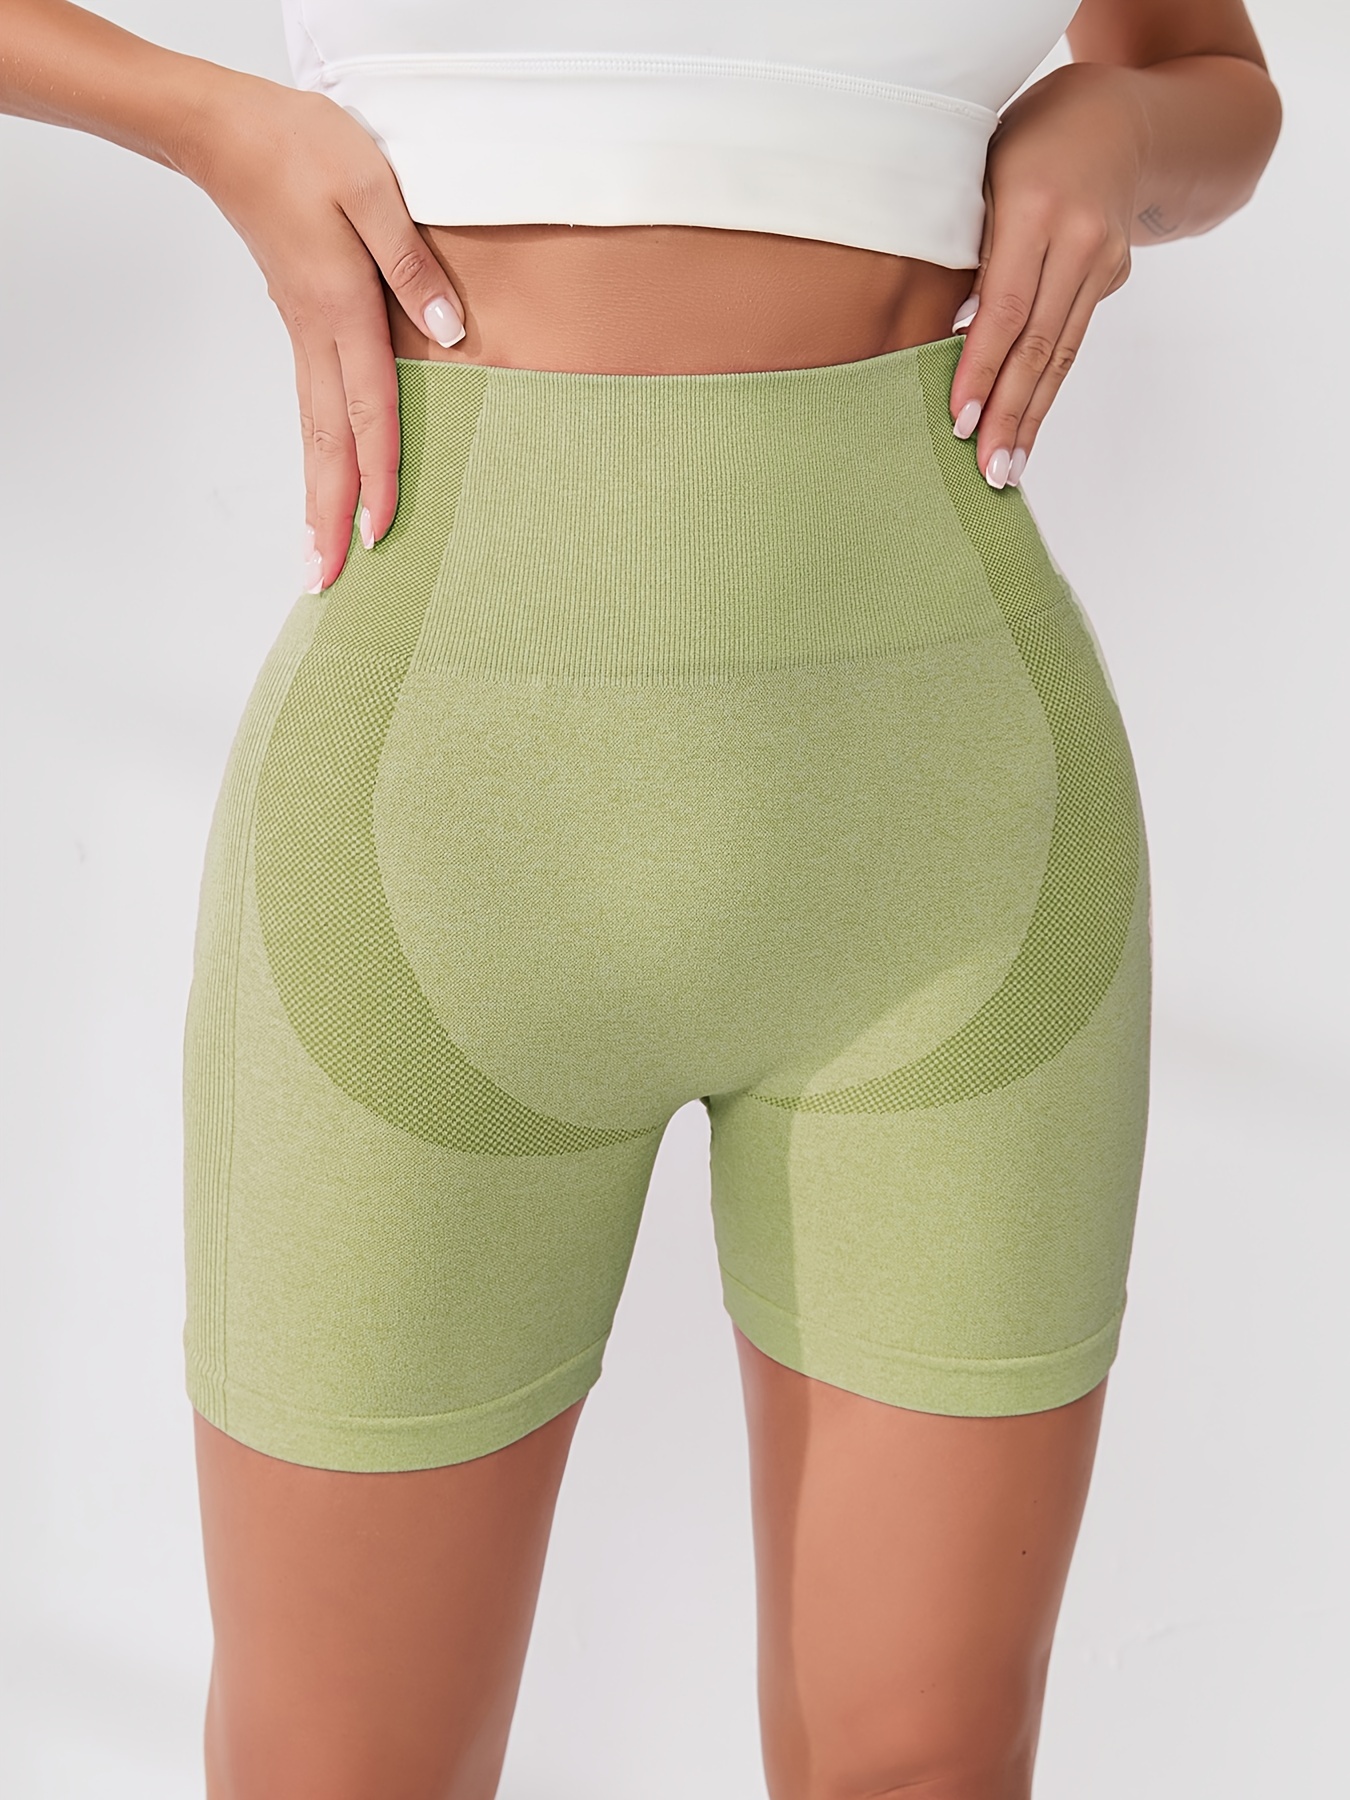 Feinuhan Women's High Waisted Yoga Pants Tummy Control Booty